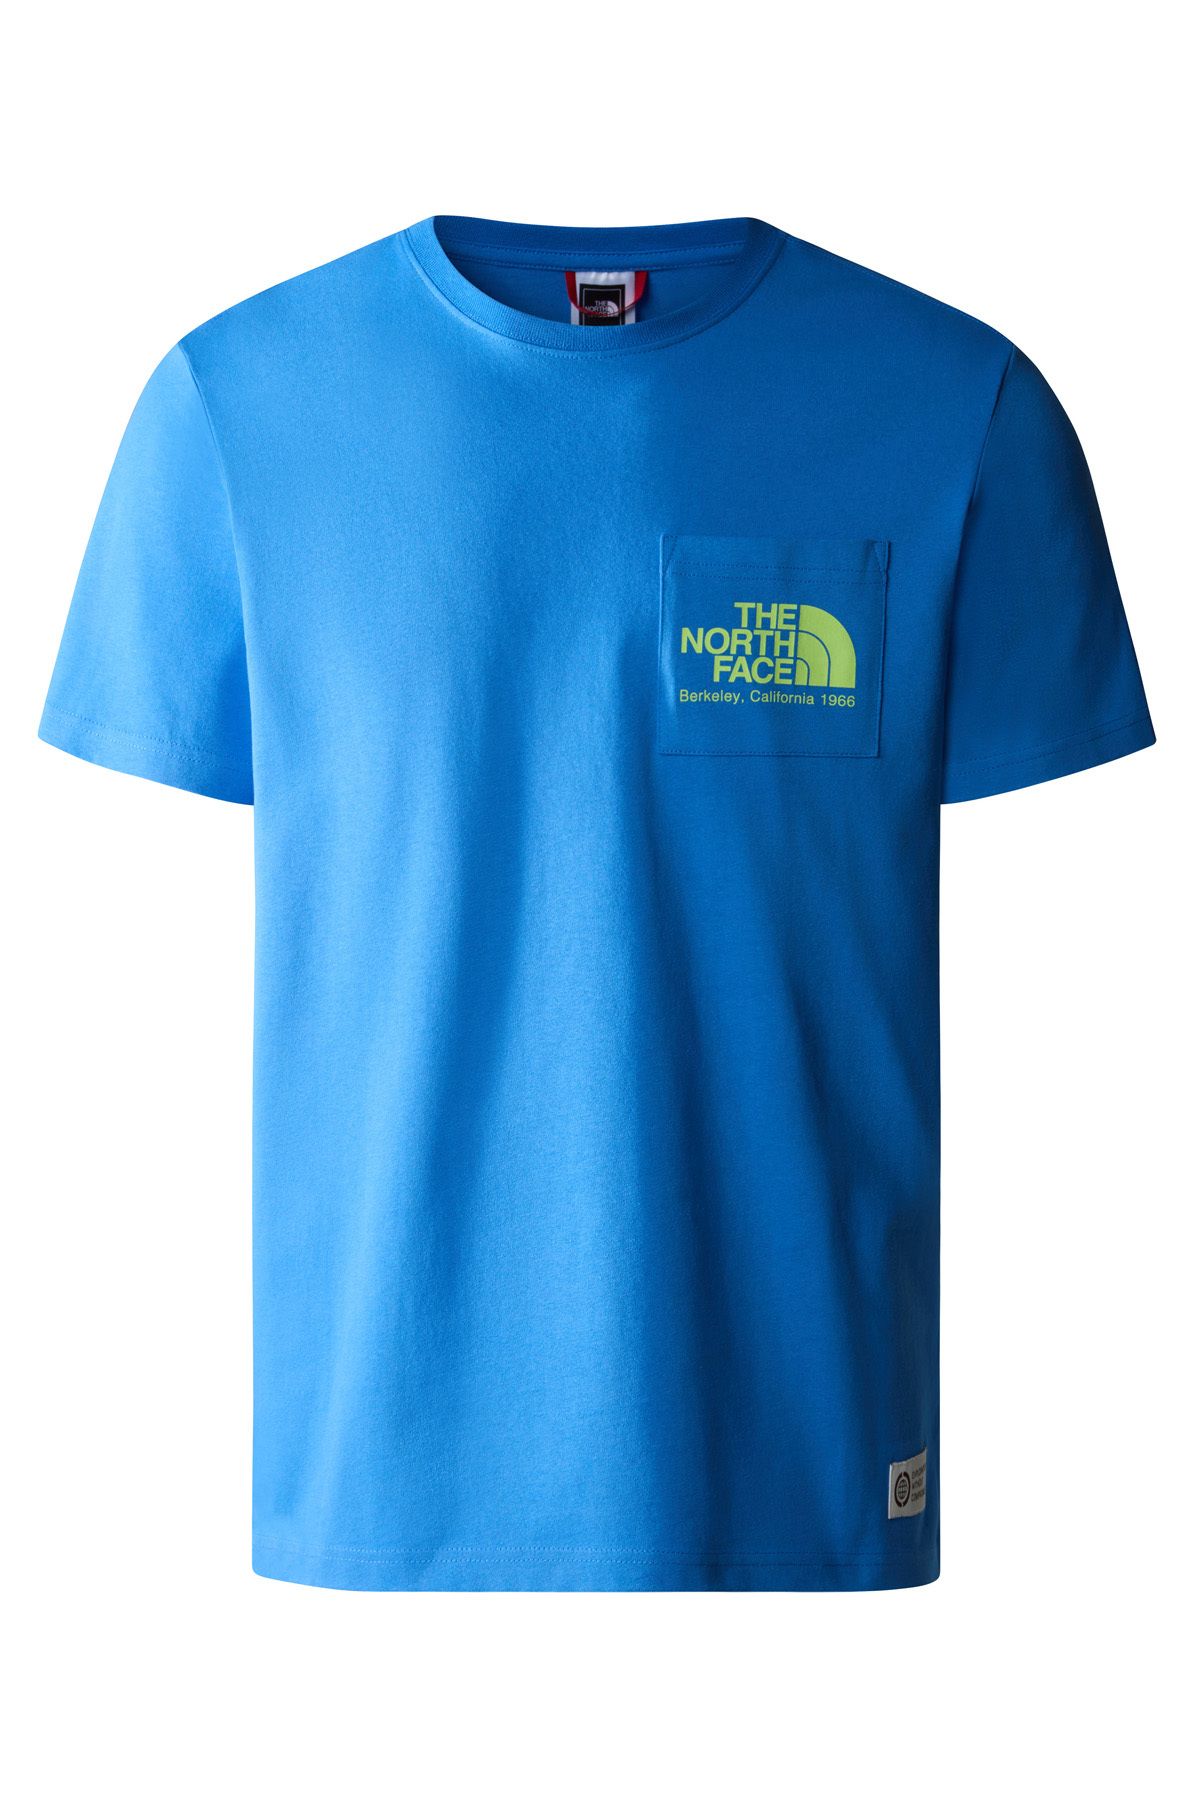 The North Face Berkeley California Pocket Tee Erkek T-Shirt - NF0A55GD